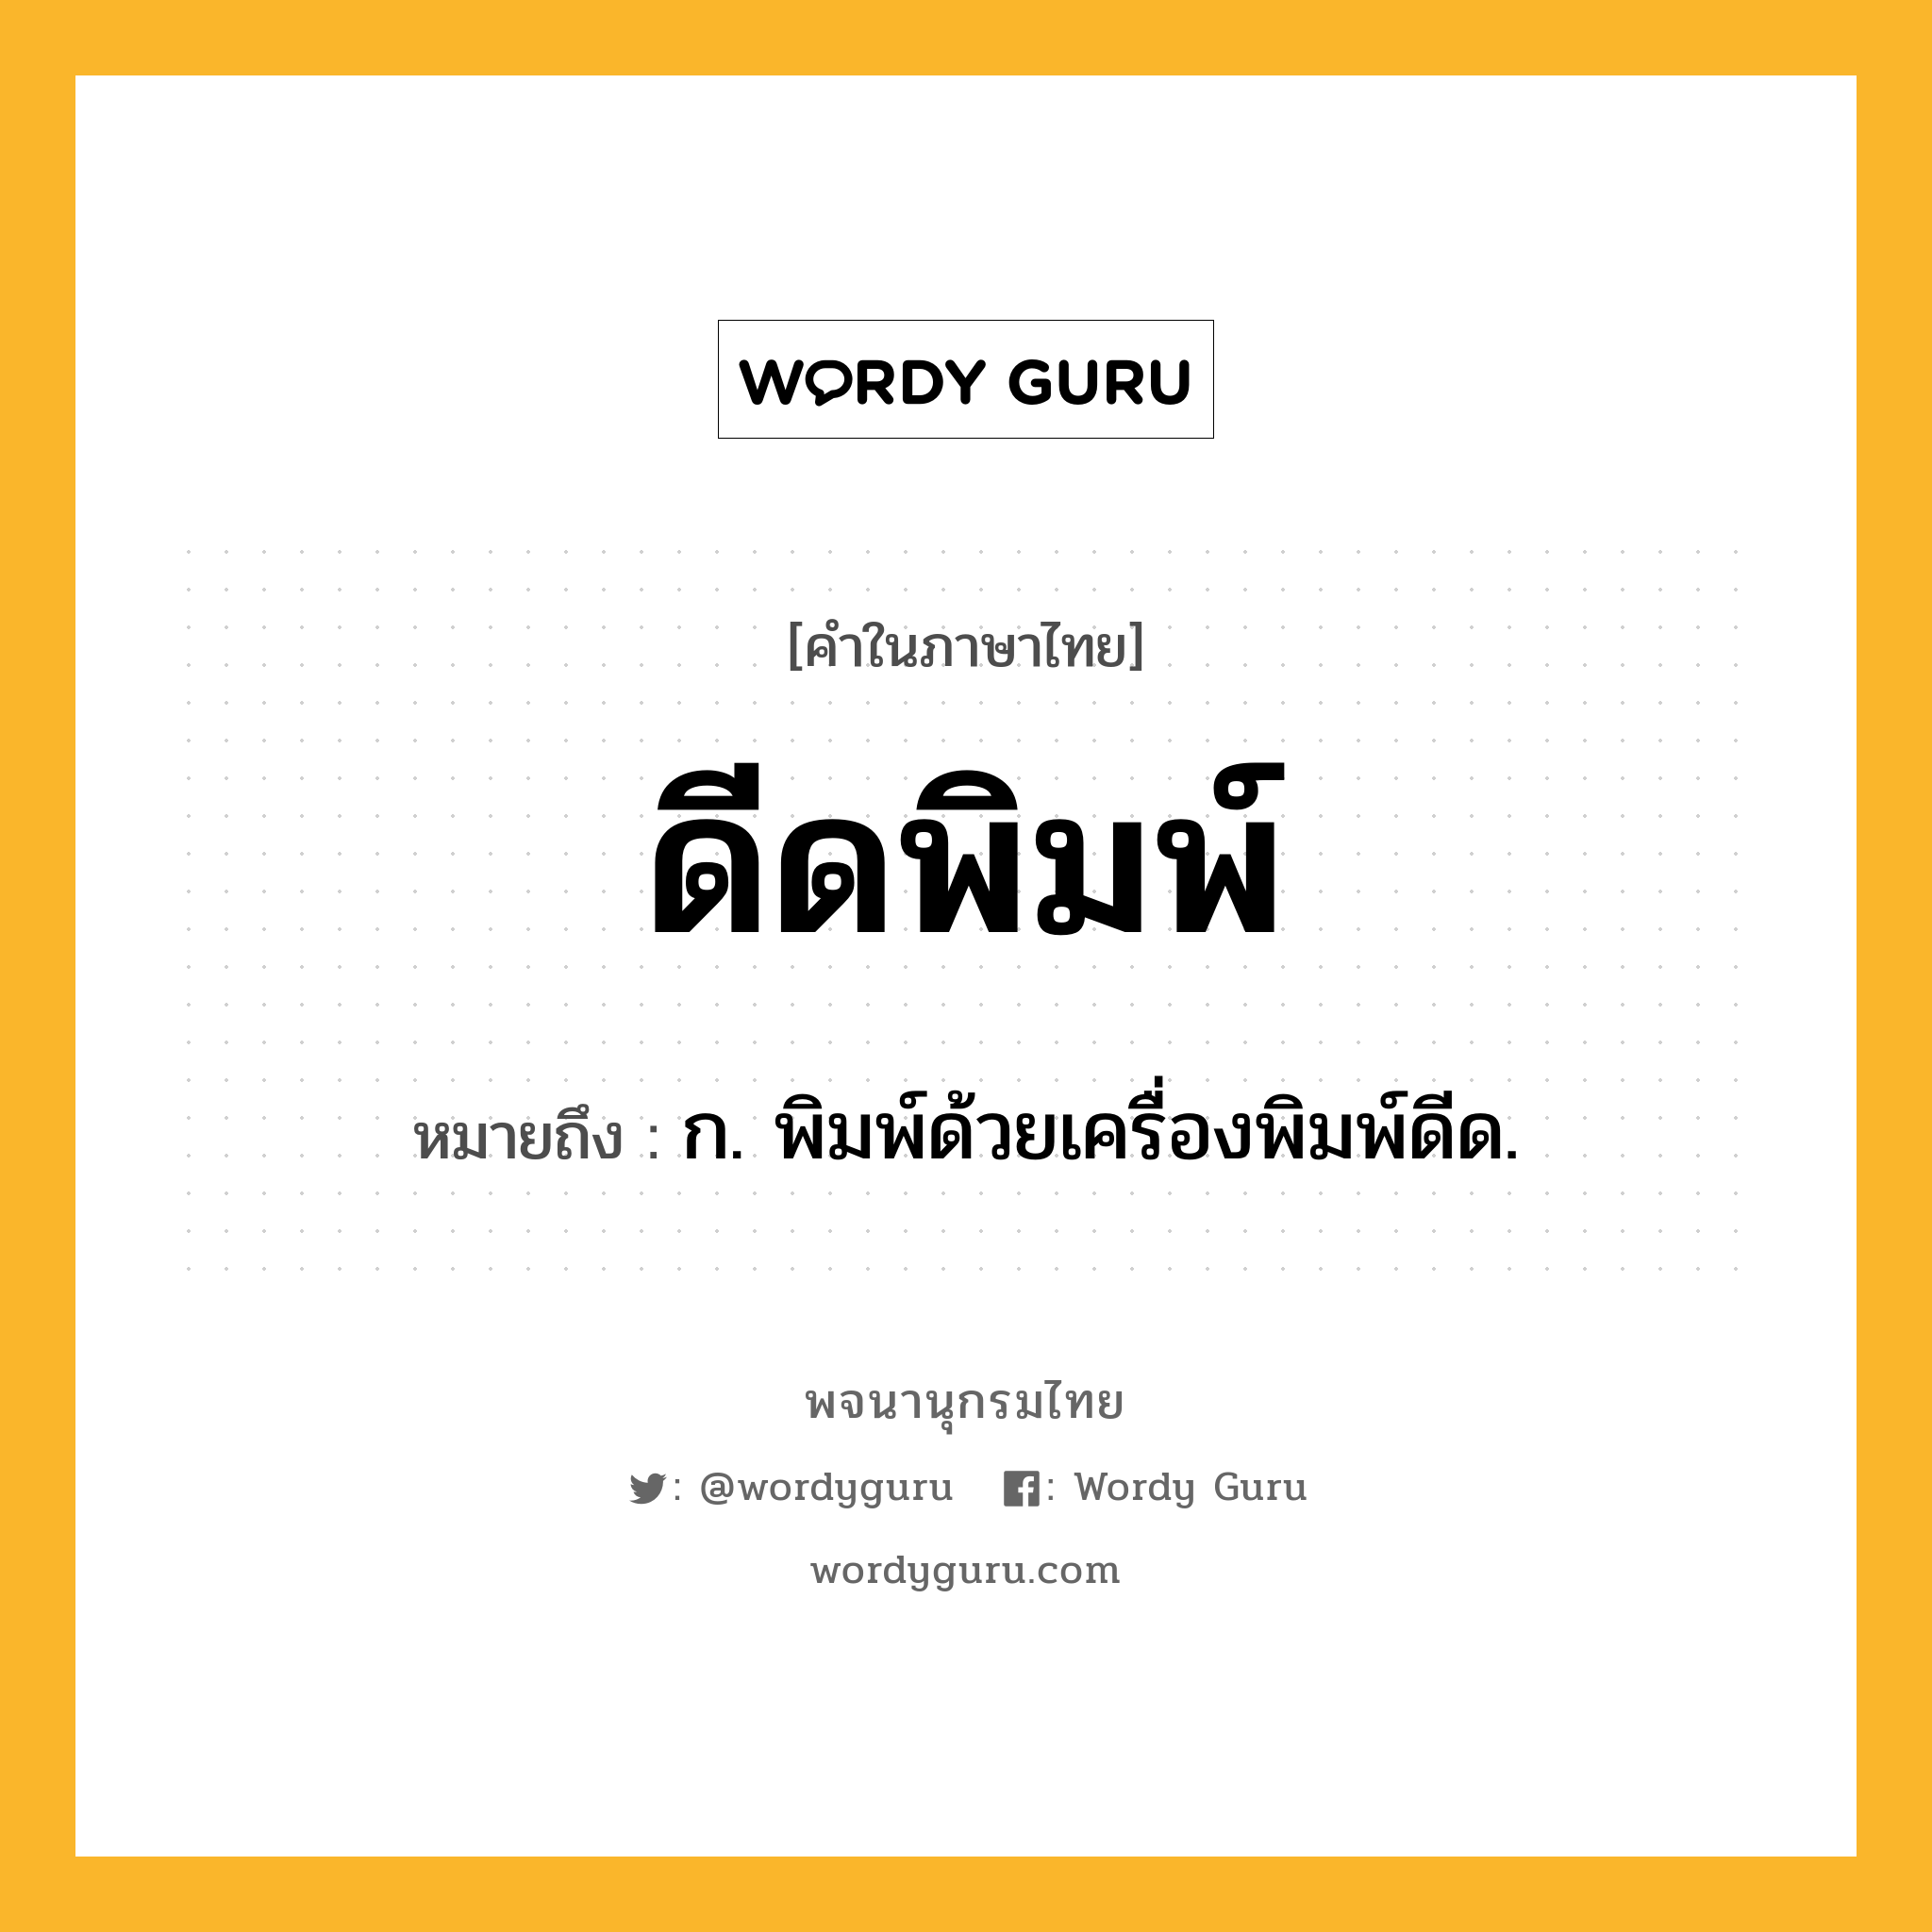 ดีดพิมพ์ ความหมาย หมายถึงอะไร?, คำในภาษาไทย ดีดพิมพ์ หมายถึง ก. พิมพ์ด้วยเครื่องพิมพ์ดีด.